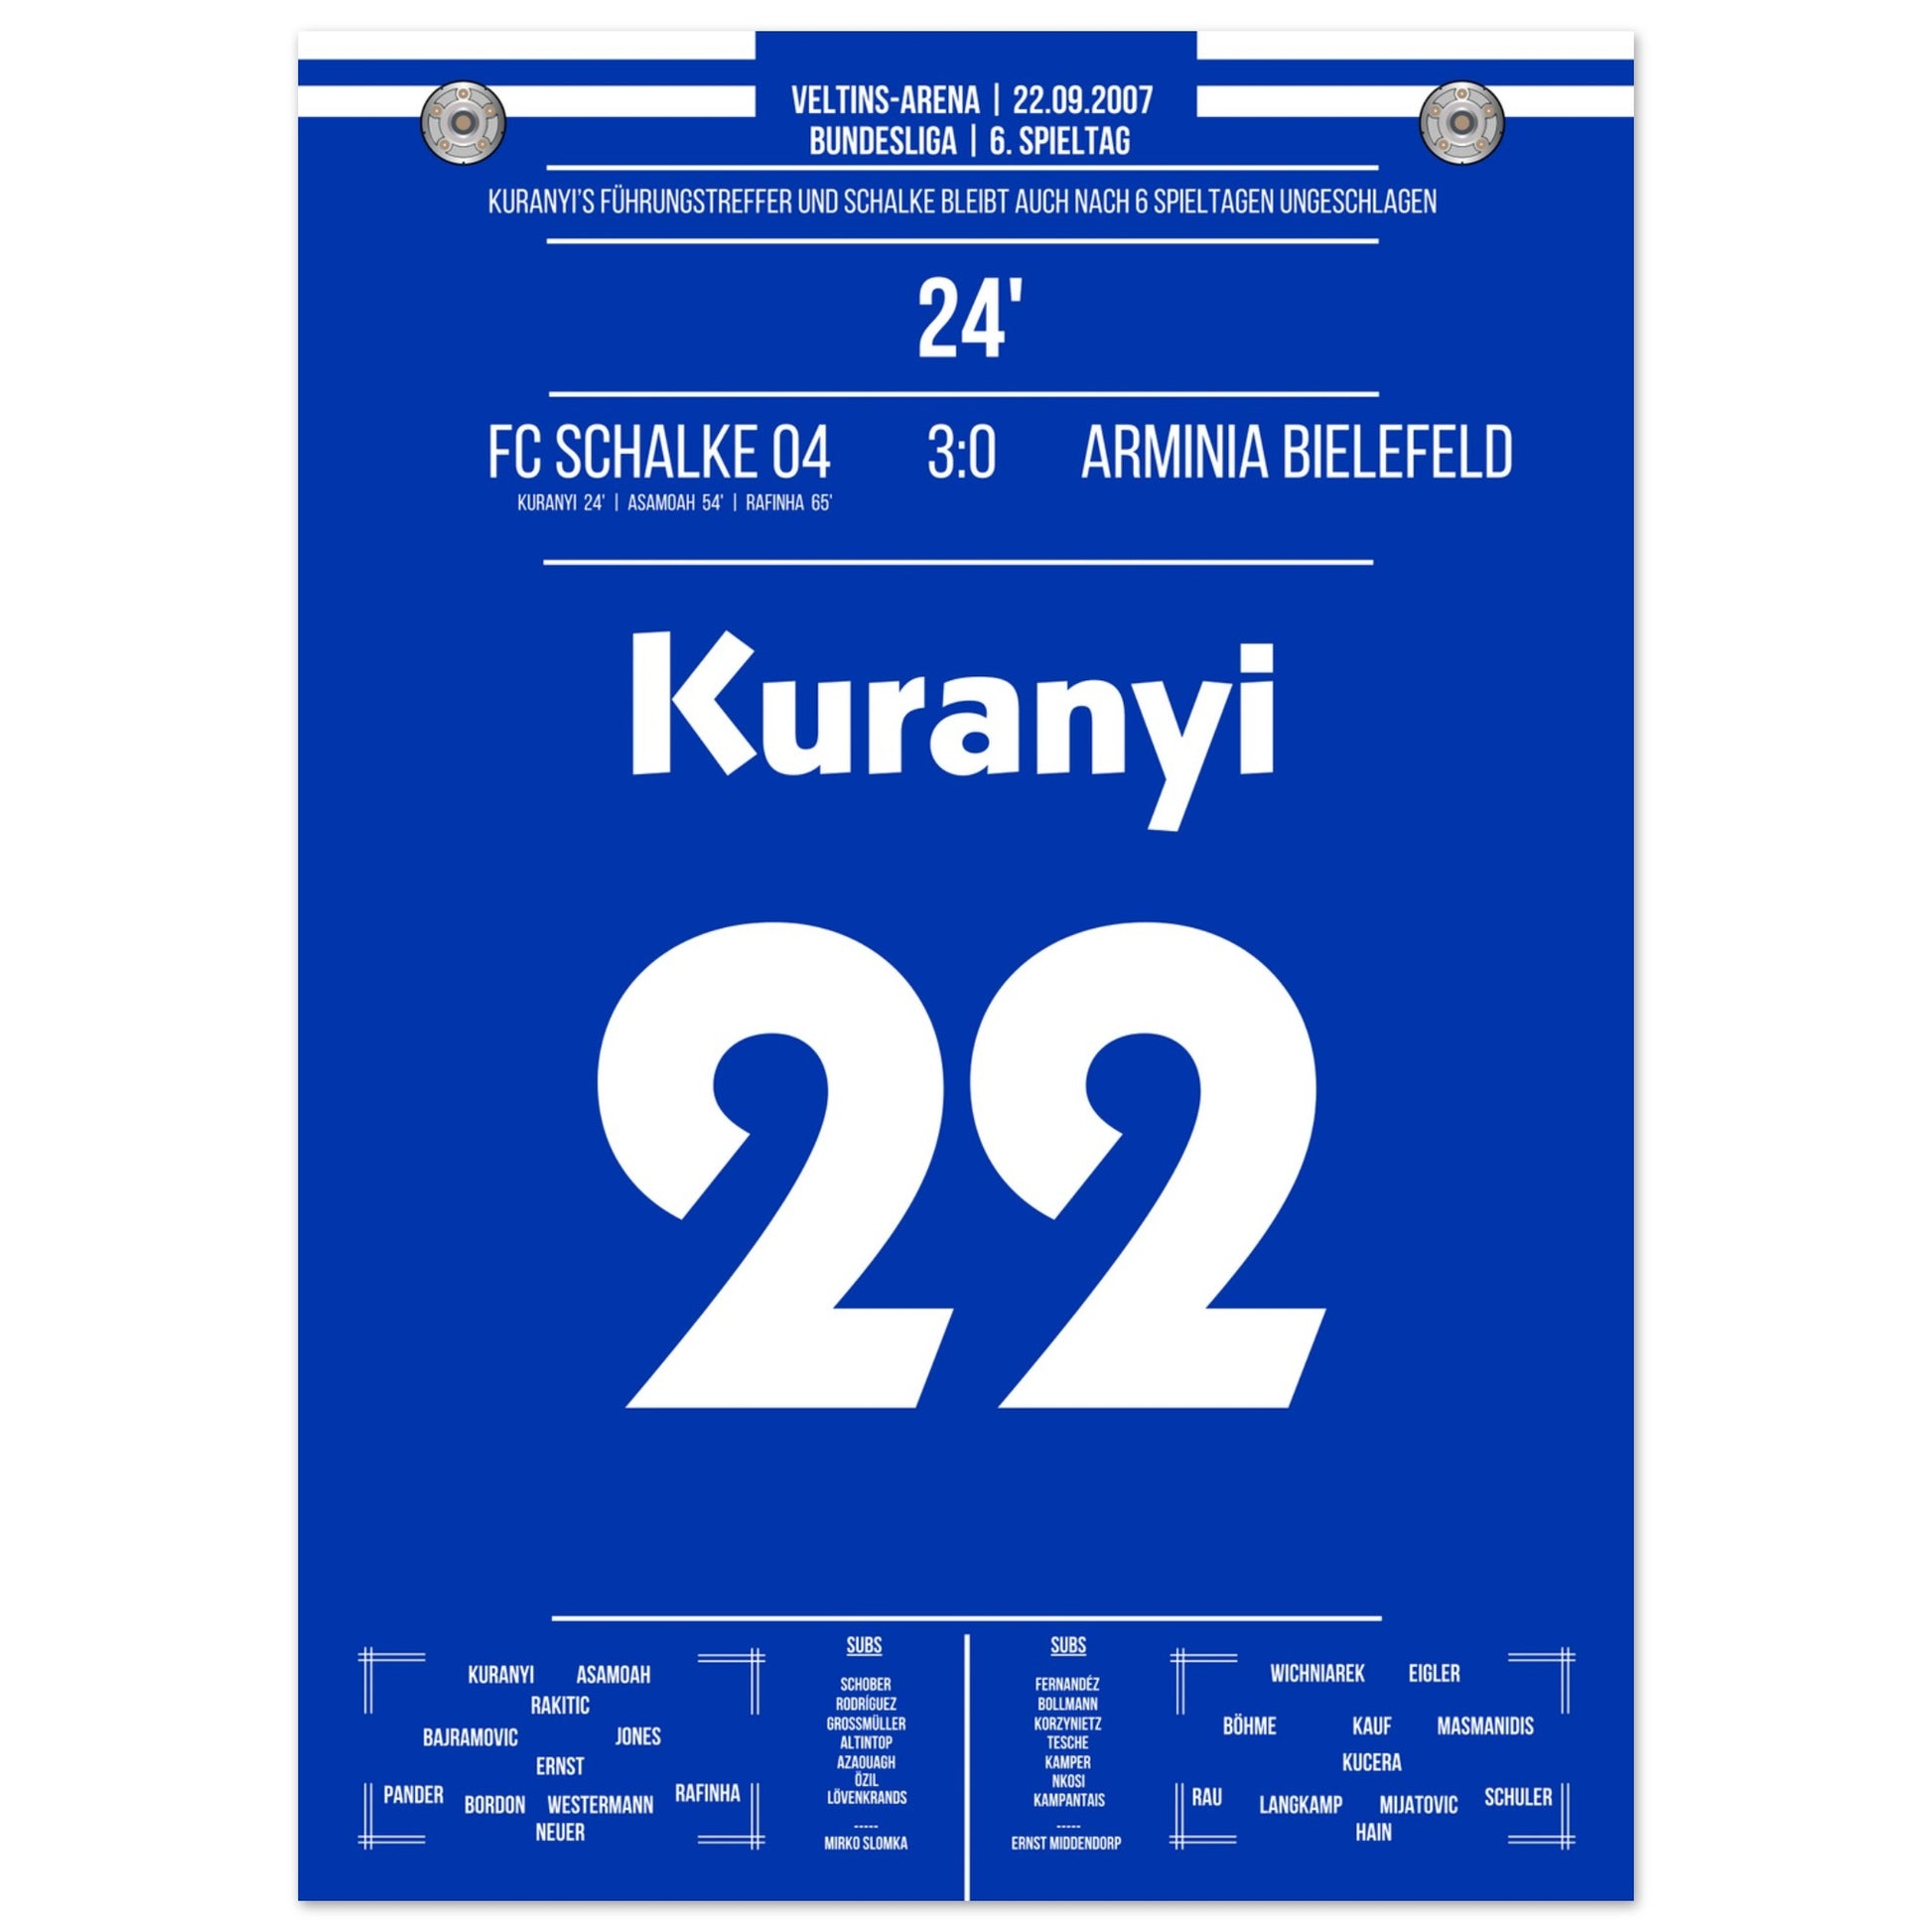 Kuranyi's Führungstreffer bei 3-0 Sieg gegen Bielefeld 2007 50x70-cm-20x28-Ohne-Rahmen